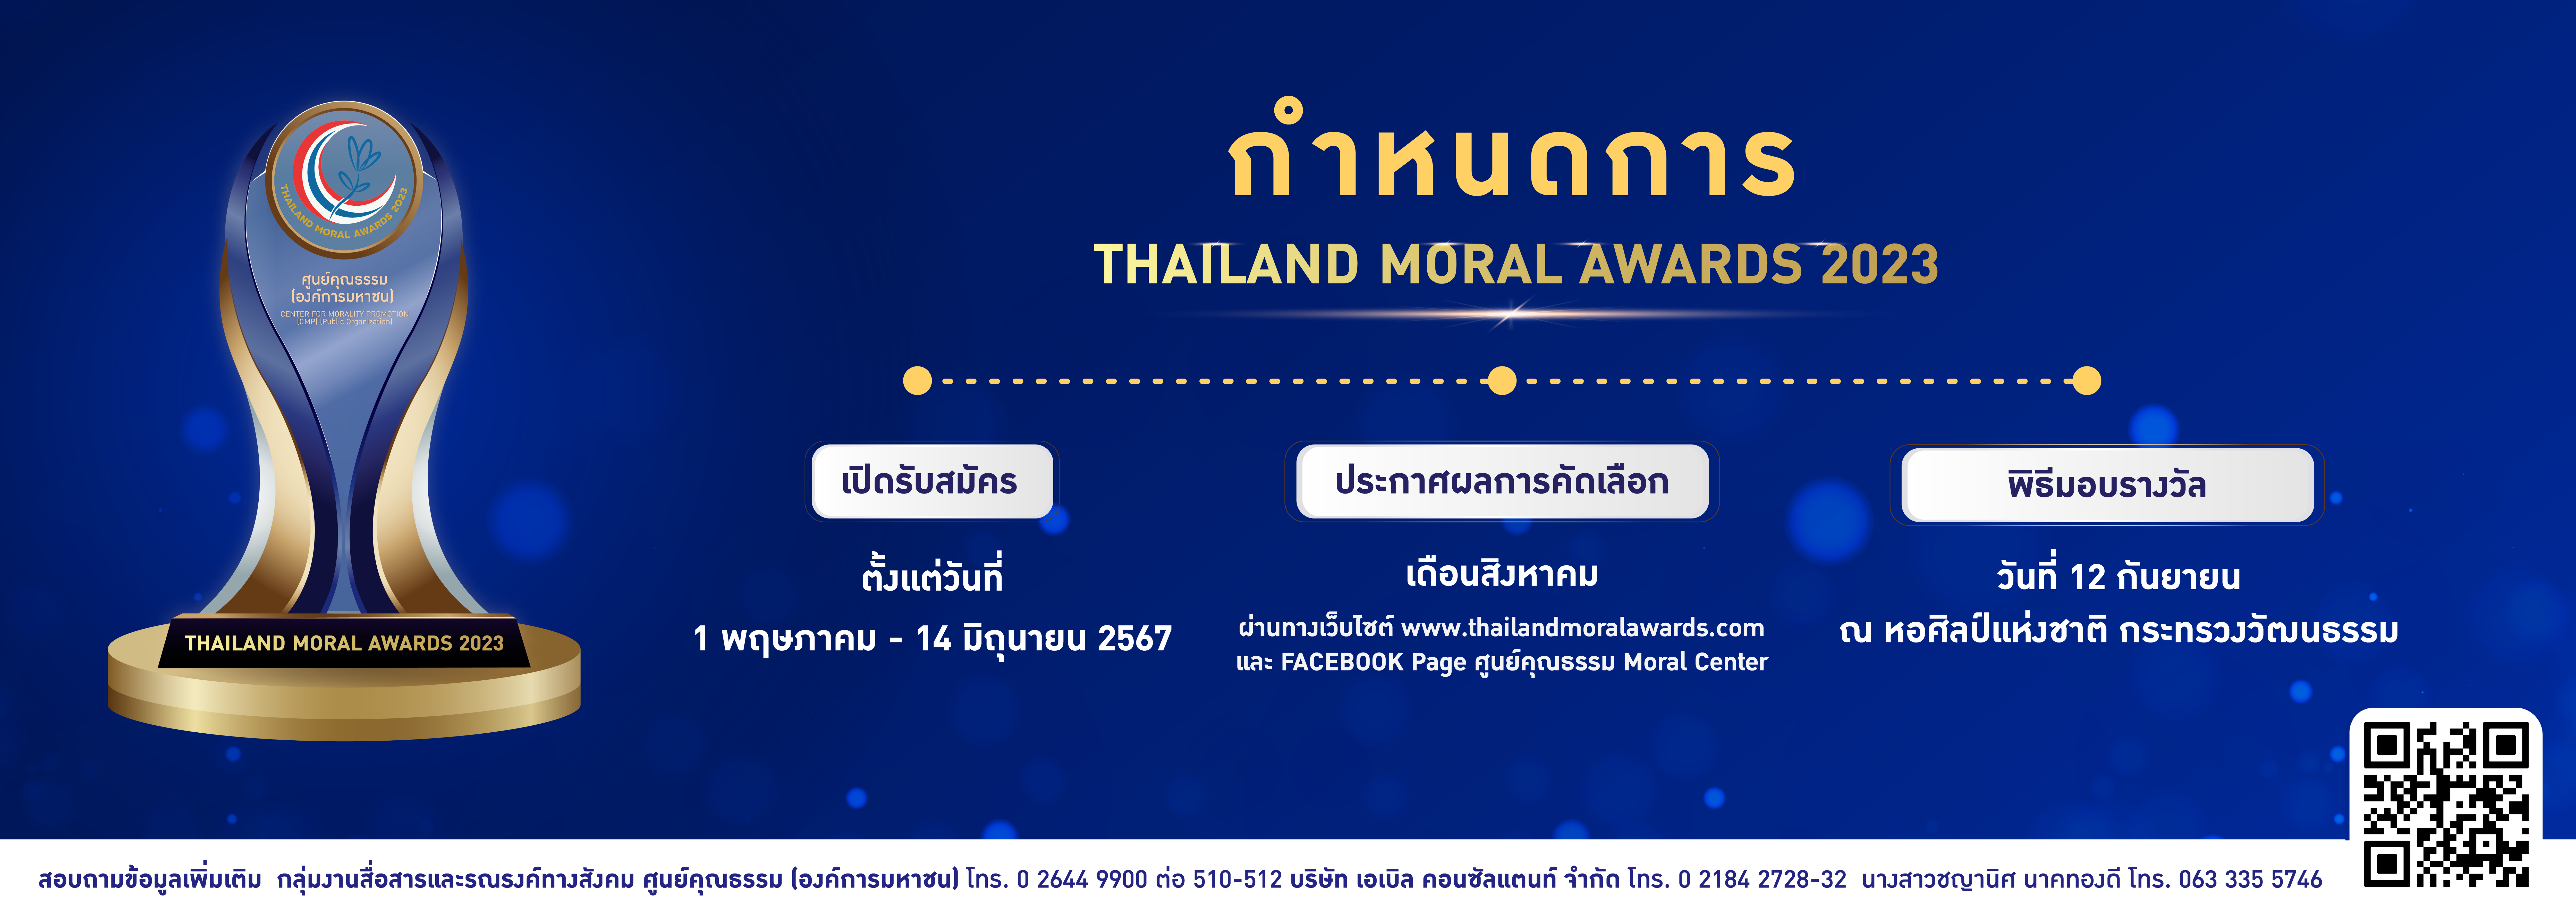 กำหนดการ THAILAND MORAL AWARDS 2023